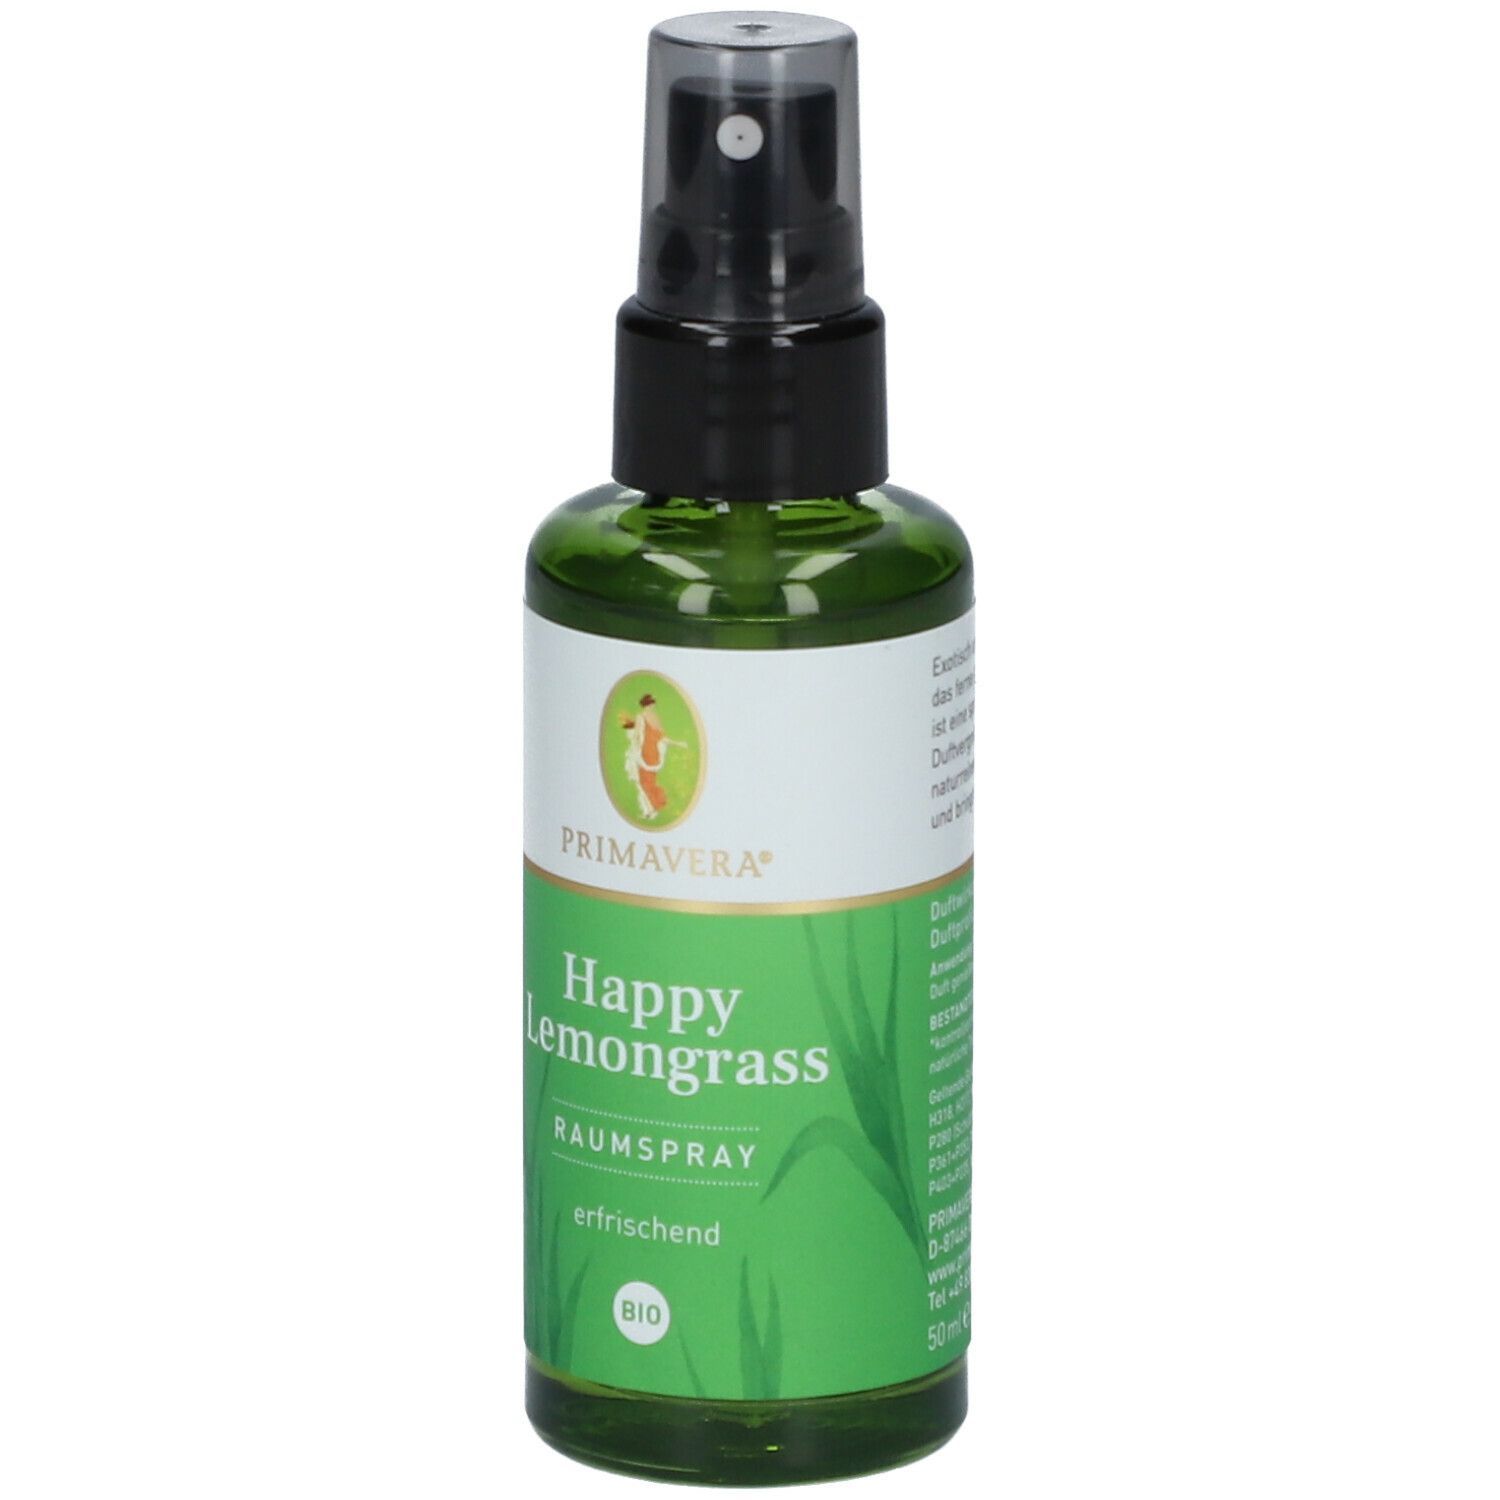 PRIMAVERA® Happy Lemongrass Raumspray bio